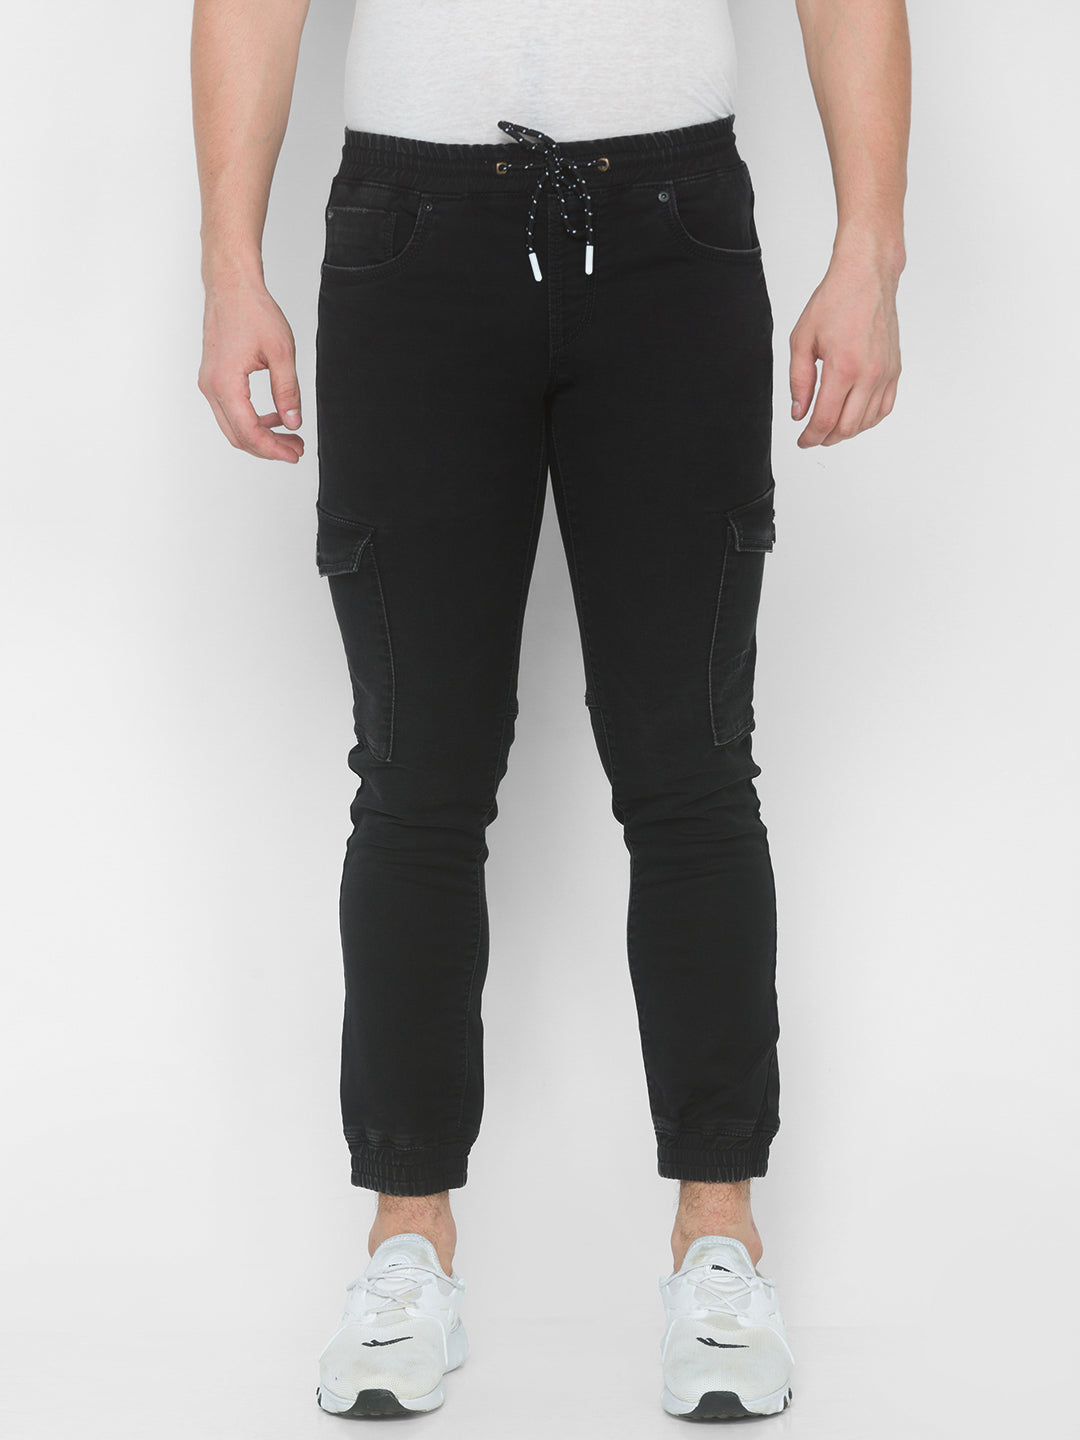 Buy Black Jeans for Men by iVOC Online  Ajiocom